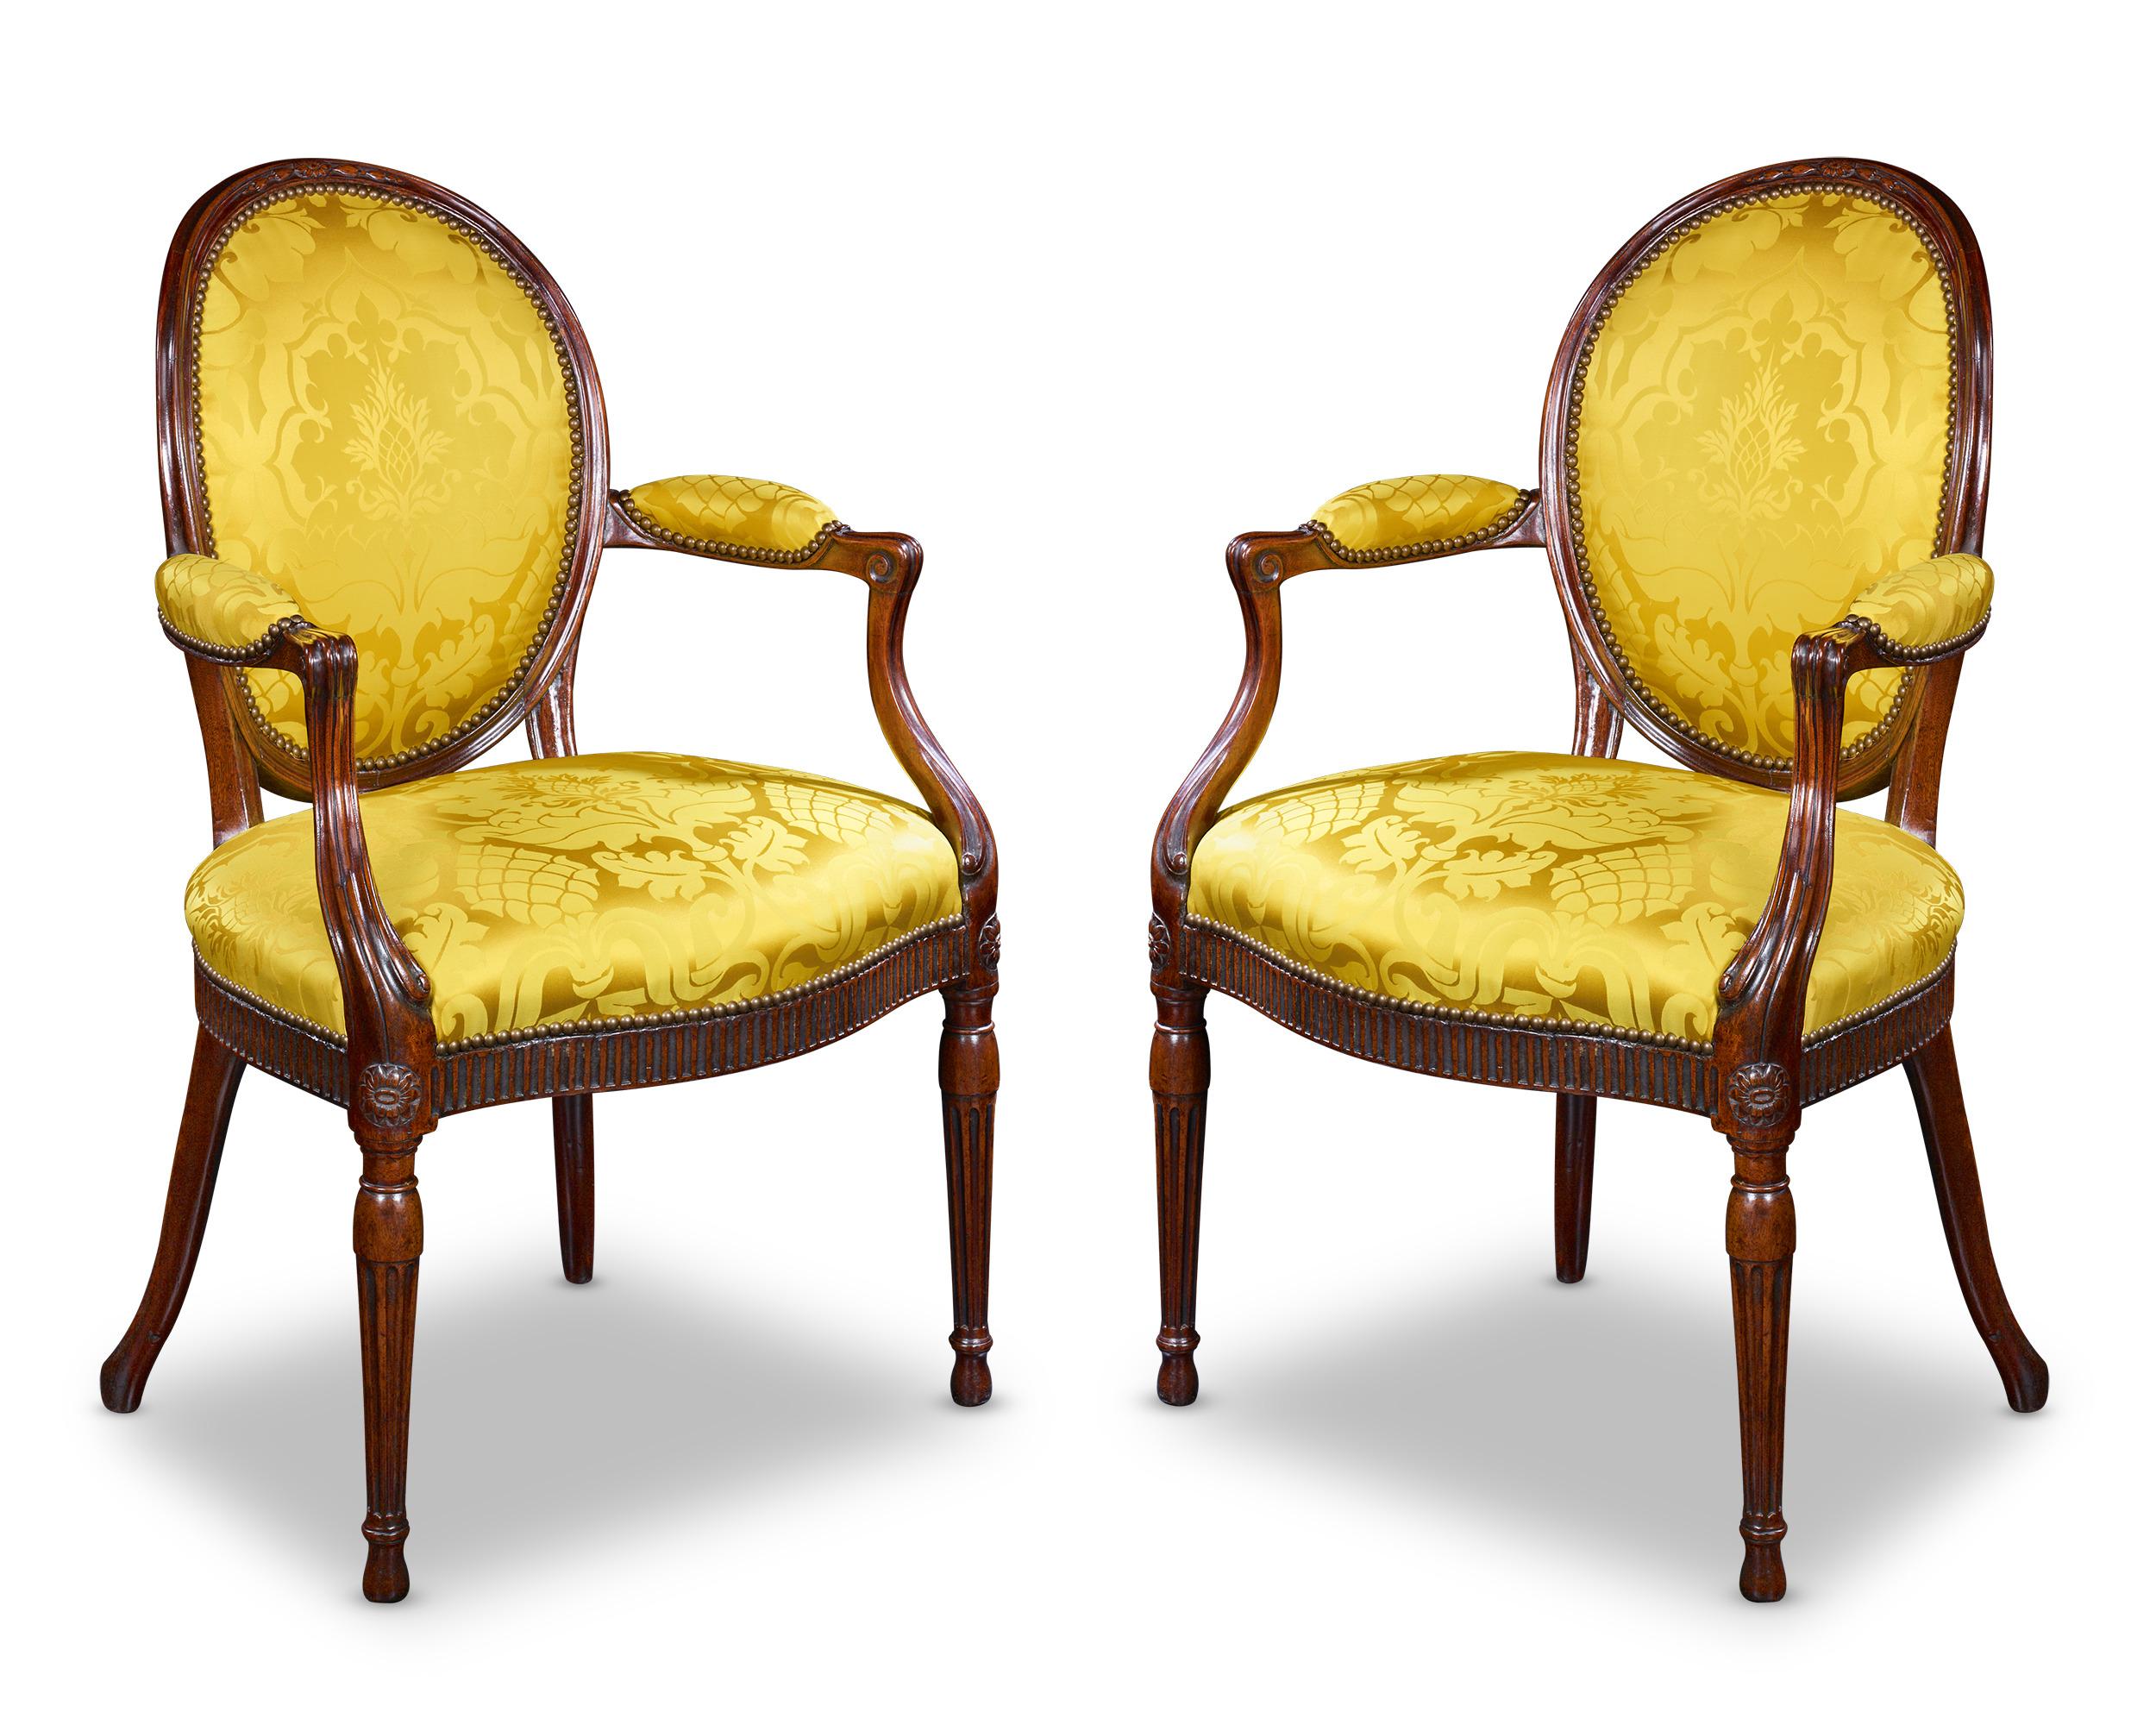 Dieses Set aus zwei Mahagonistühlen wurde von dem unnachahmlichen und famosen Thomas Chippendale gefertigt. Die gelb gepolsterten Sitze ergänzen das tiefe Mahagoni wunderbar und schaffen ein elegantes Gleichgewicht. Das Talent und die Genialität der